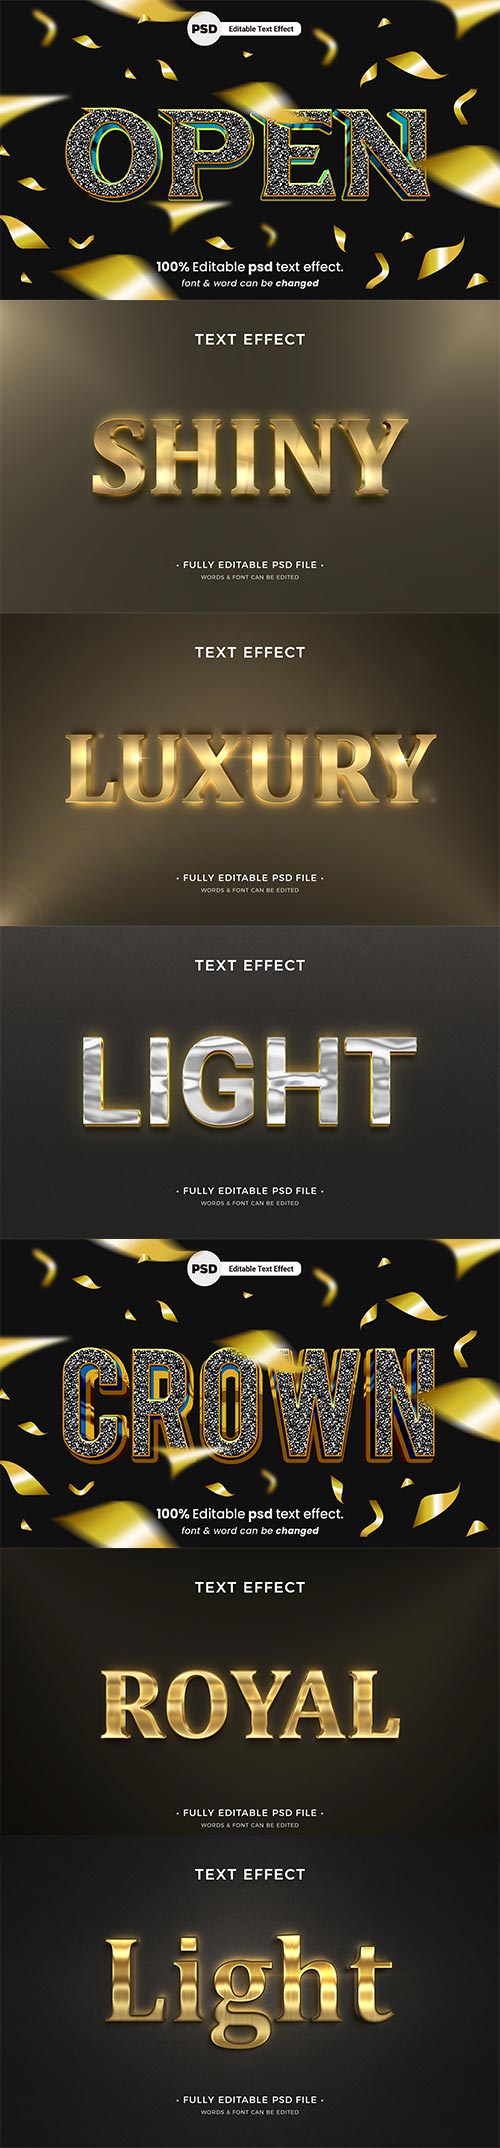 Psd text effect set vol 651